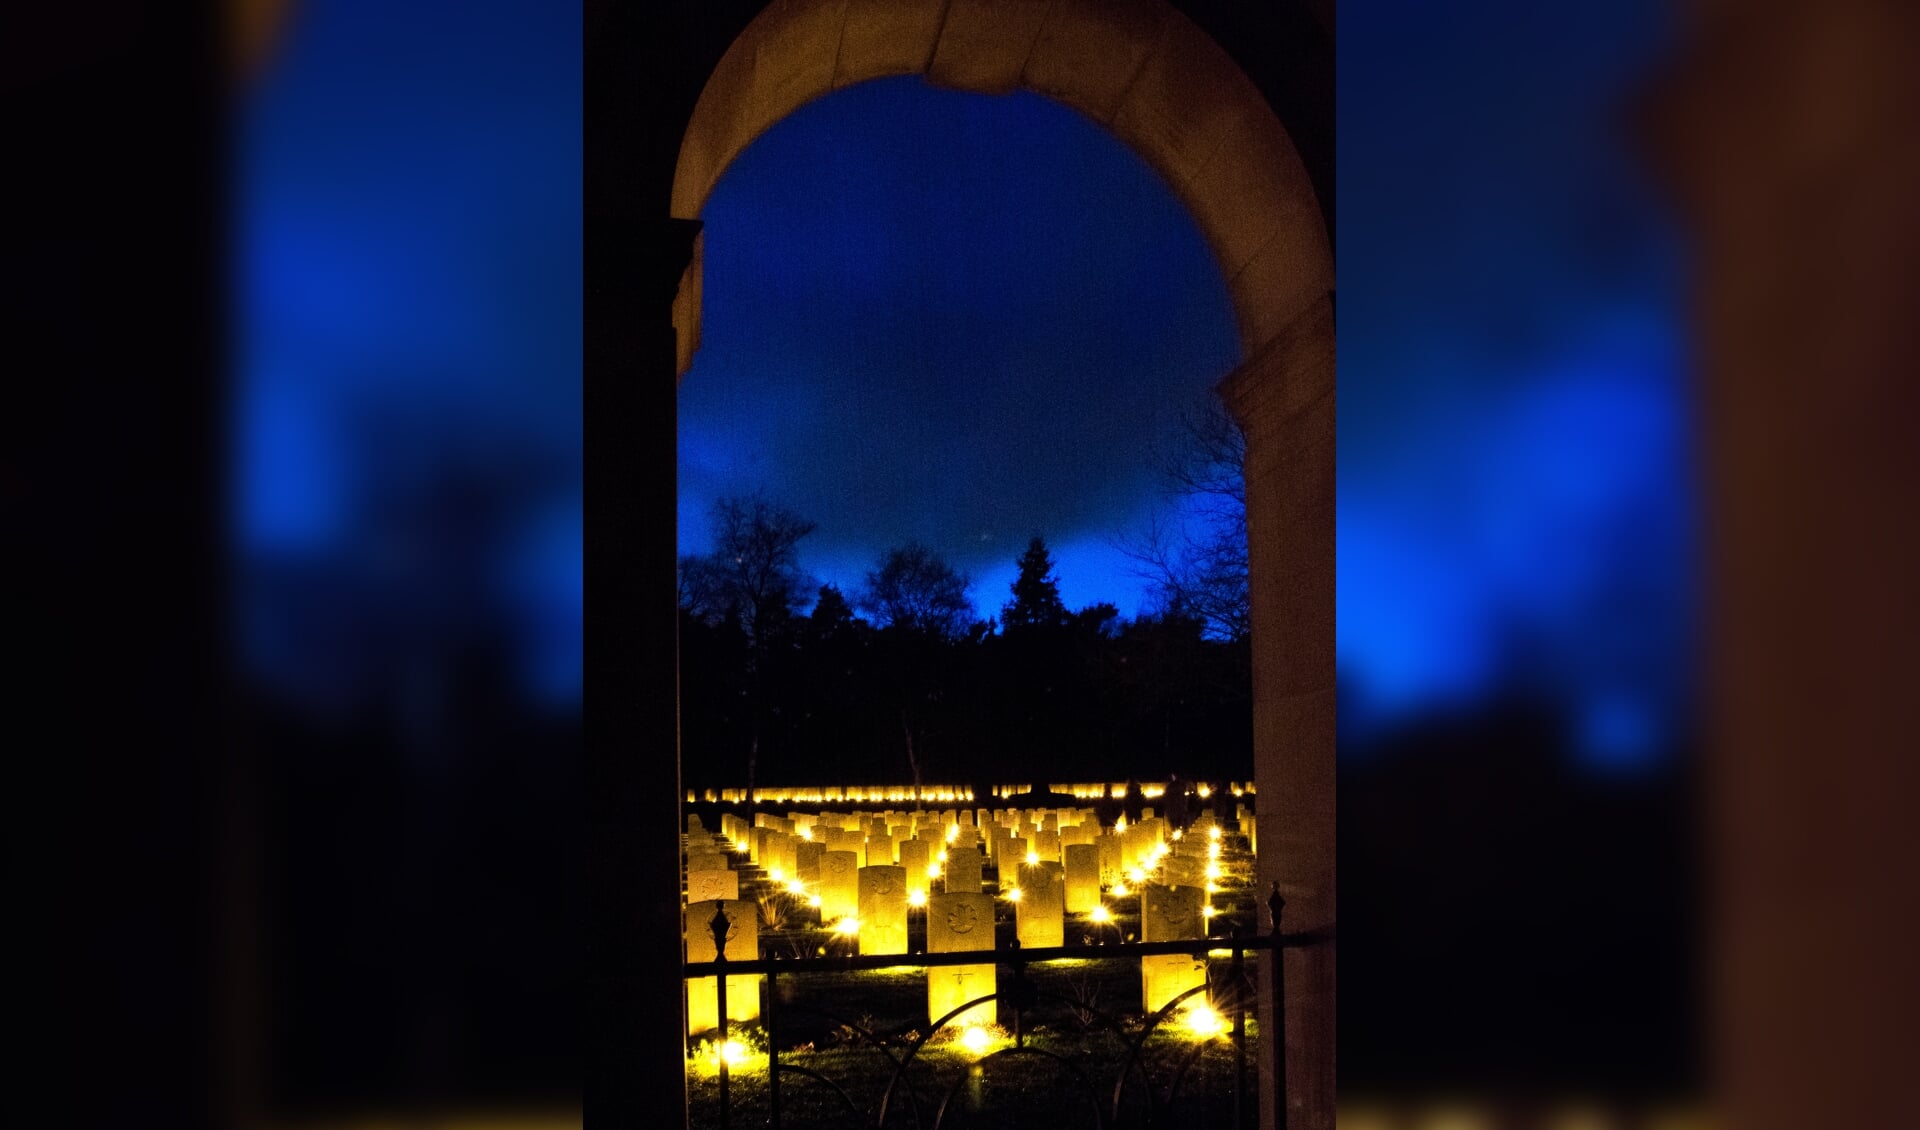 De brandende kaarsen zetten de begraafplaats in een indrukwekkende gloed gedurende de avond en nacht. 